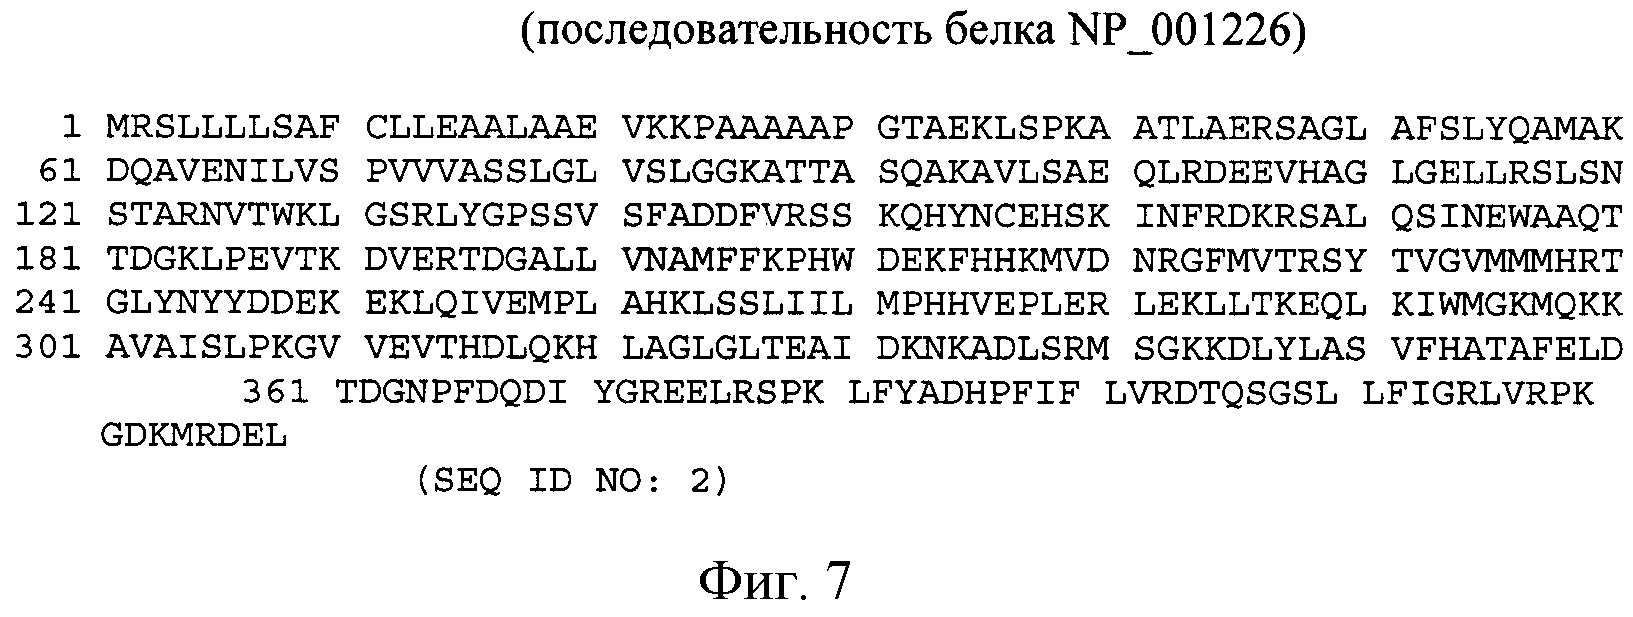 МОДУЛЯЦИЯ ЭКСПРЕССИИ HSP47